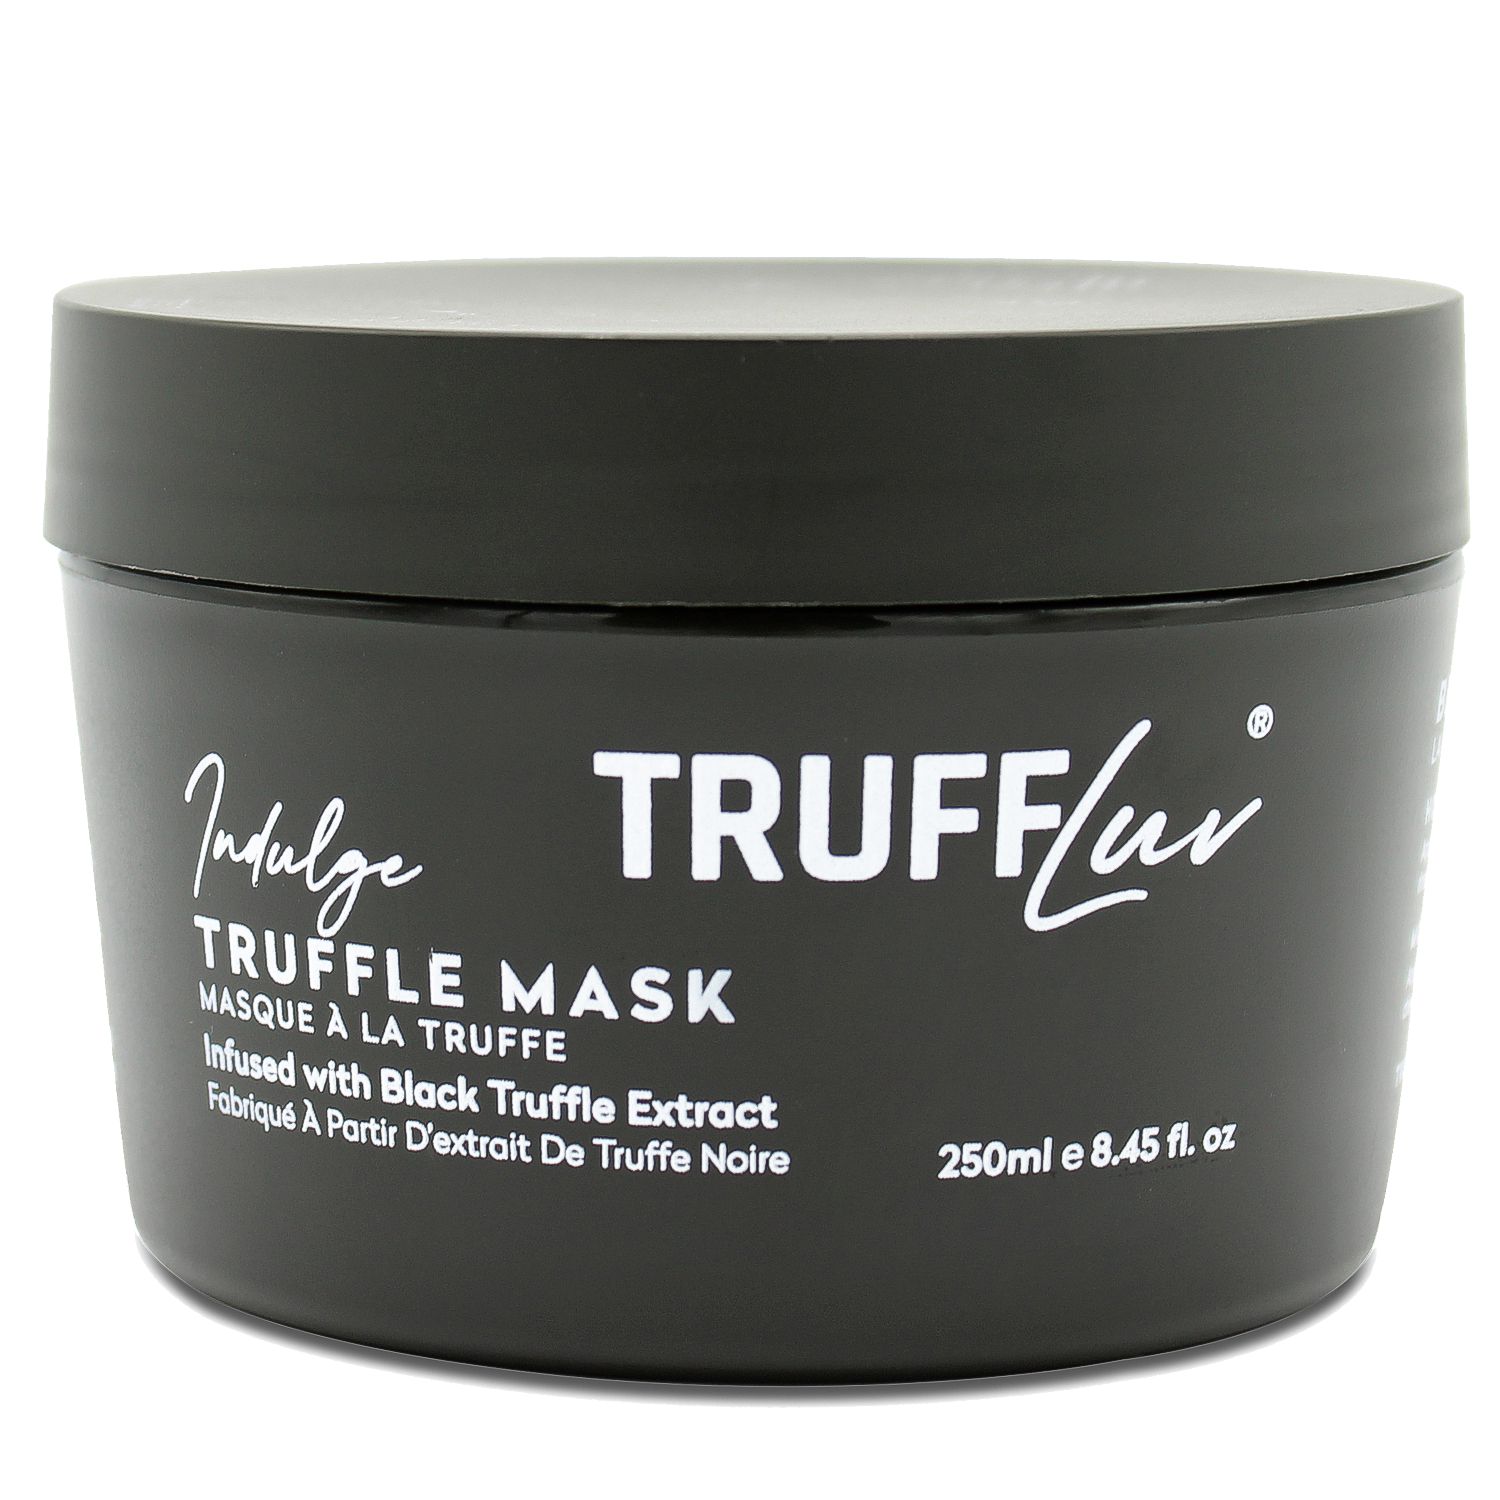 TruffLuv INDULGE Truffle Mask 250 ml